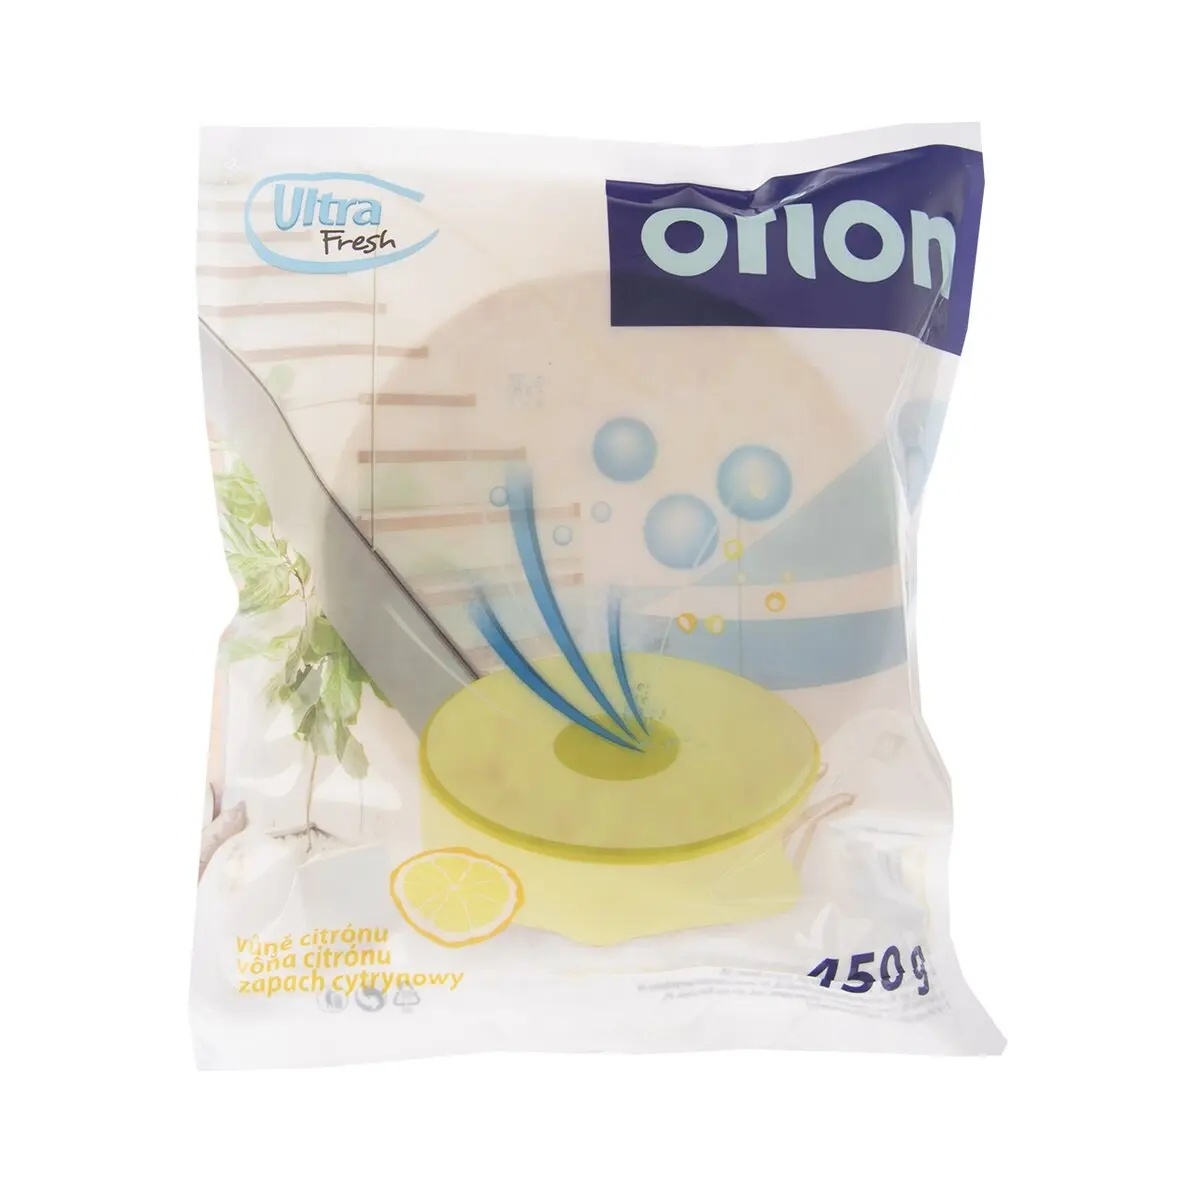 ND náplň do pohlc. vlh. 832375 tableta 450 g citron Orion